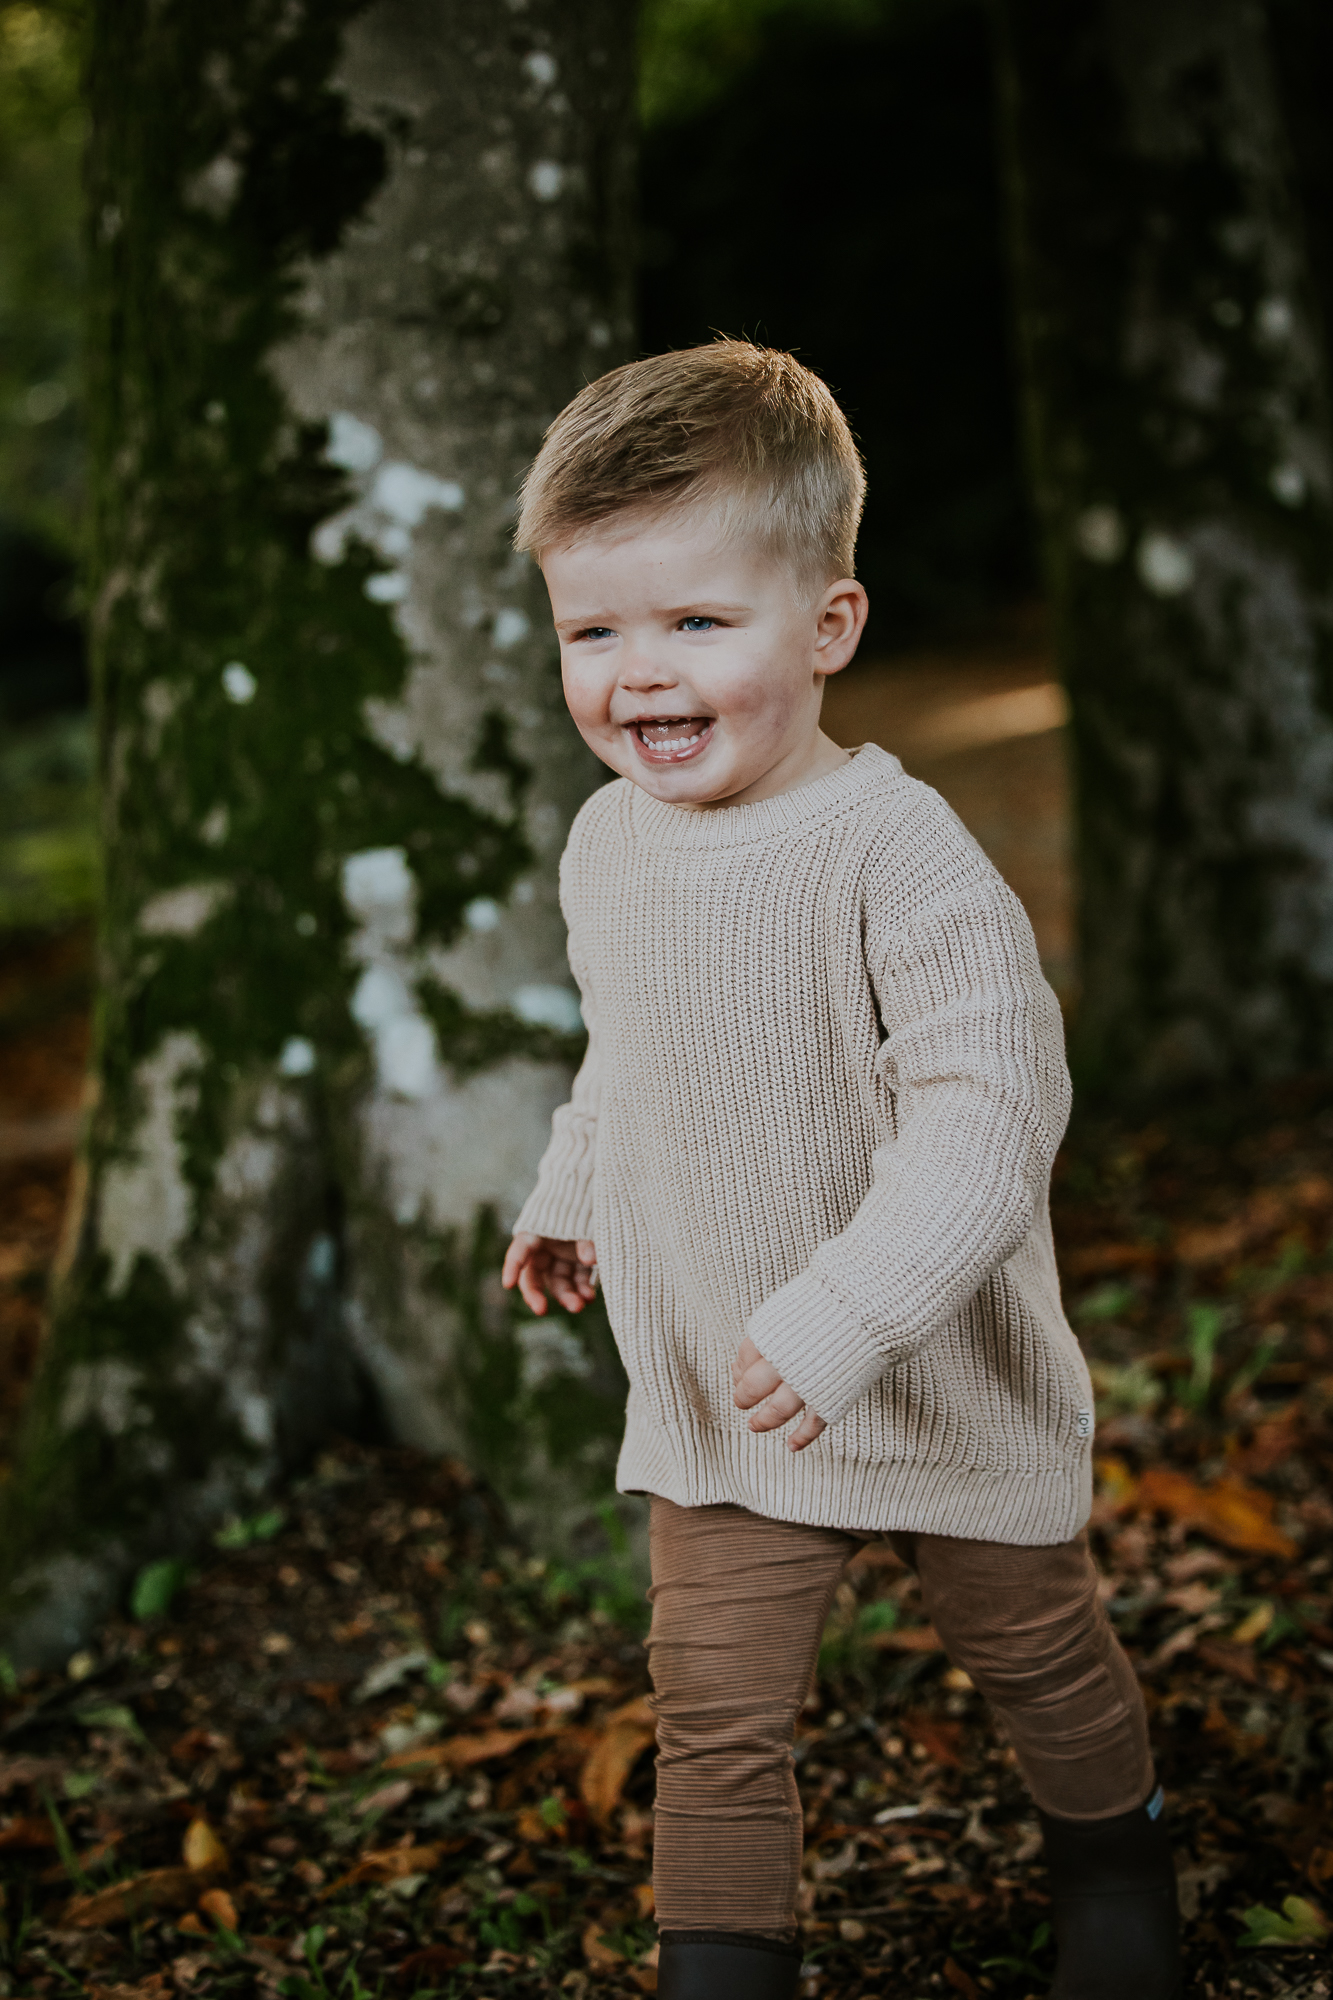 Portret van vrolijk jongetje door fotograaf Nickie Fotografie uit Dokkum, Friesland.